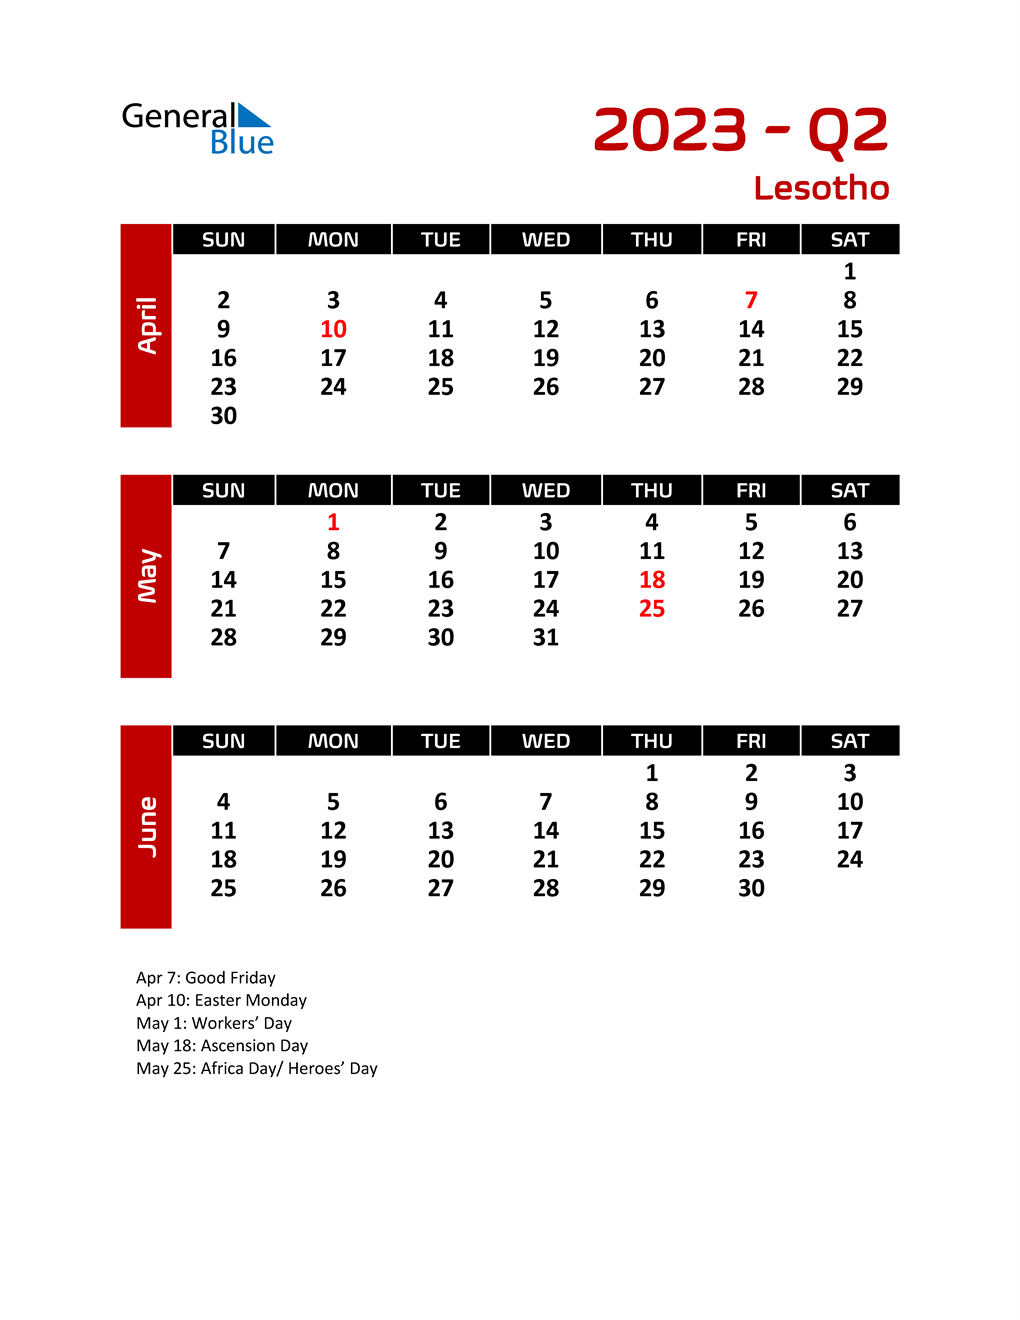 q2-2023-quarterly-calendar-with-lesotho-holidays